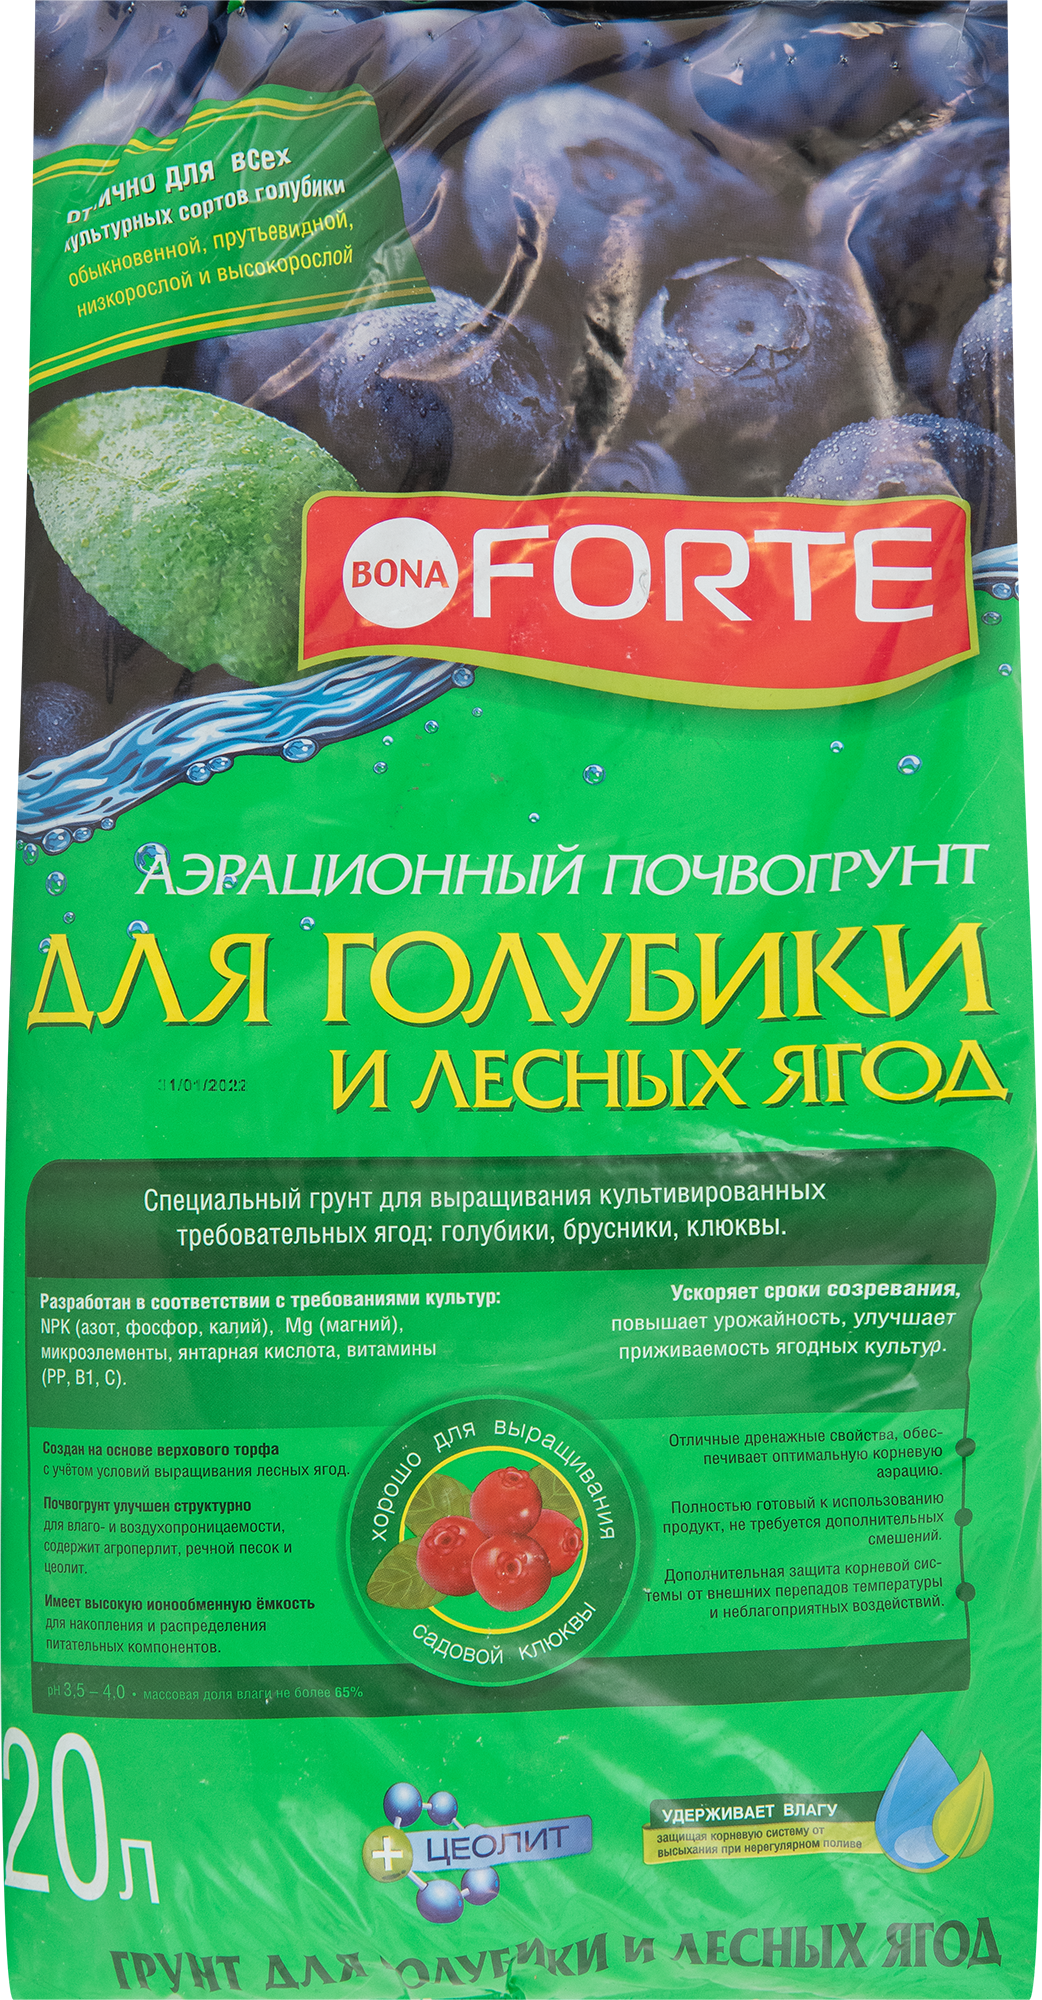 Грунт для голубики и лесных ягод 20 л в Москве – купить по низкой цене винтернет-магазине Леруа Мерлен